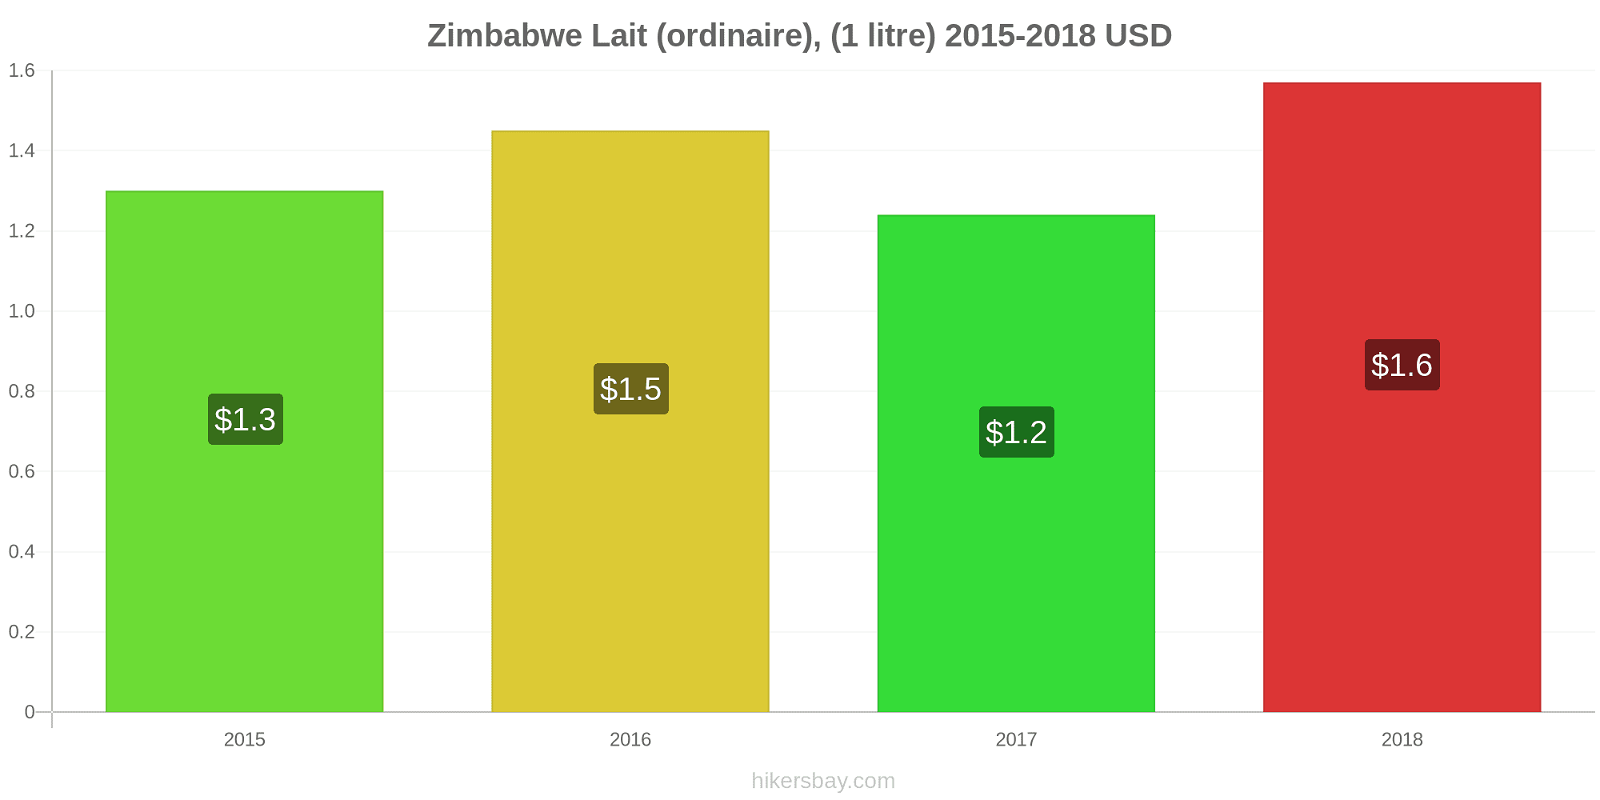 Zimbabwe changements de prix (Régulier), lait (1 litre) hikersbay.com